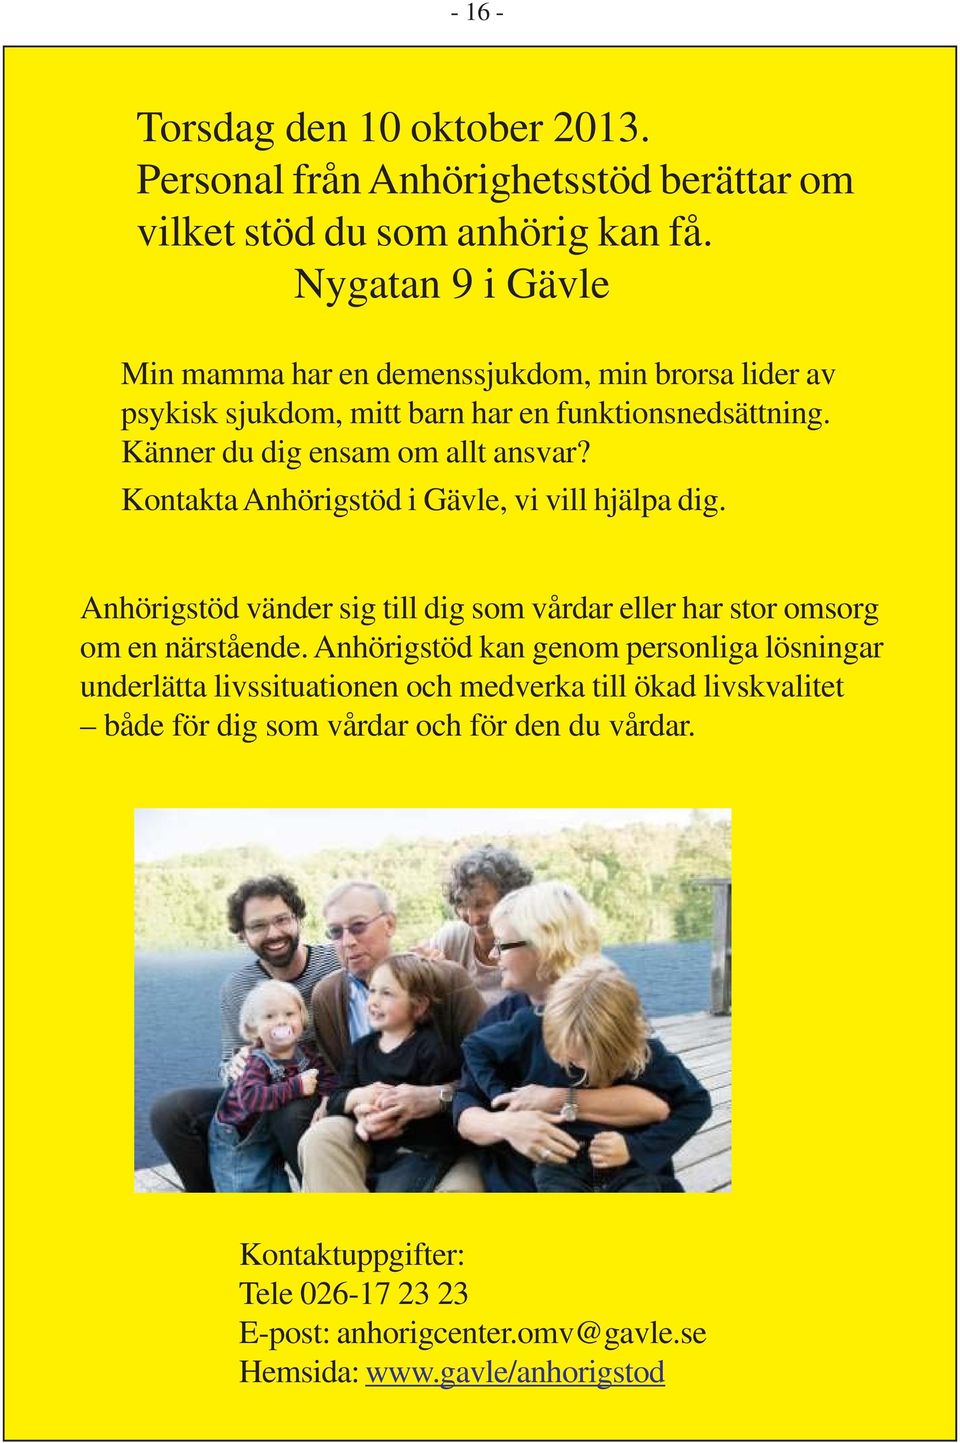 Kontakta Anhörigstöd i Gävle, vi vill hjälpa dig. Anhörigstöd vänder sig till dig som vårdar eller har stor omsorg om en närstående.